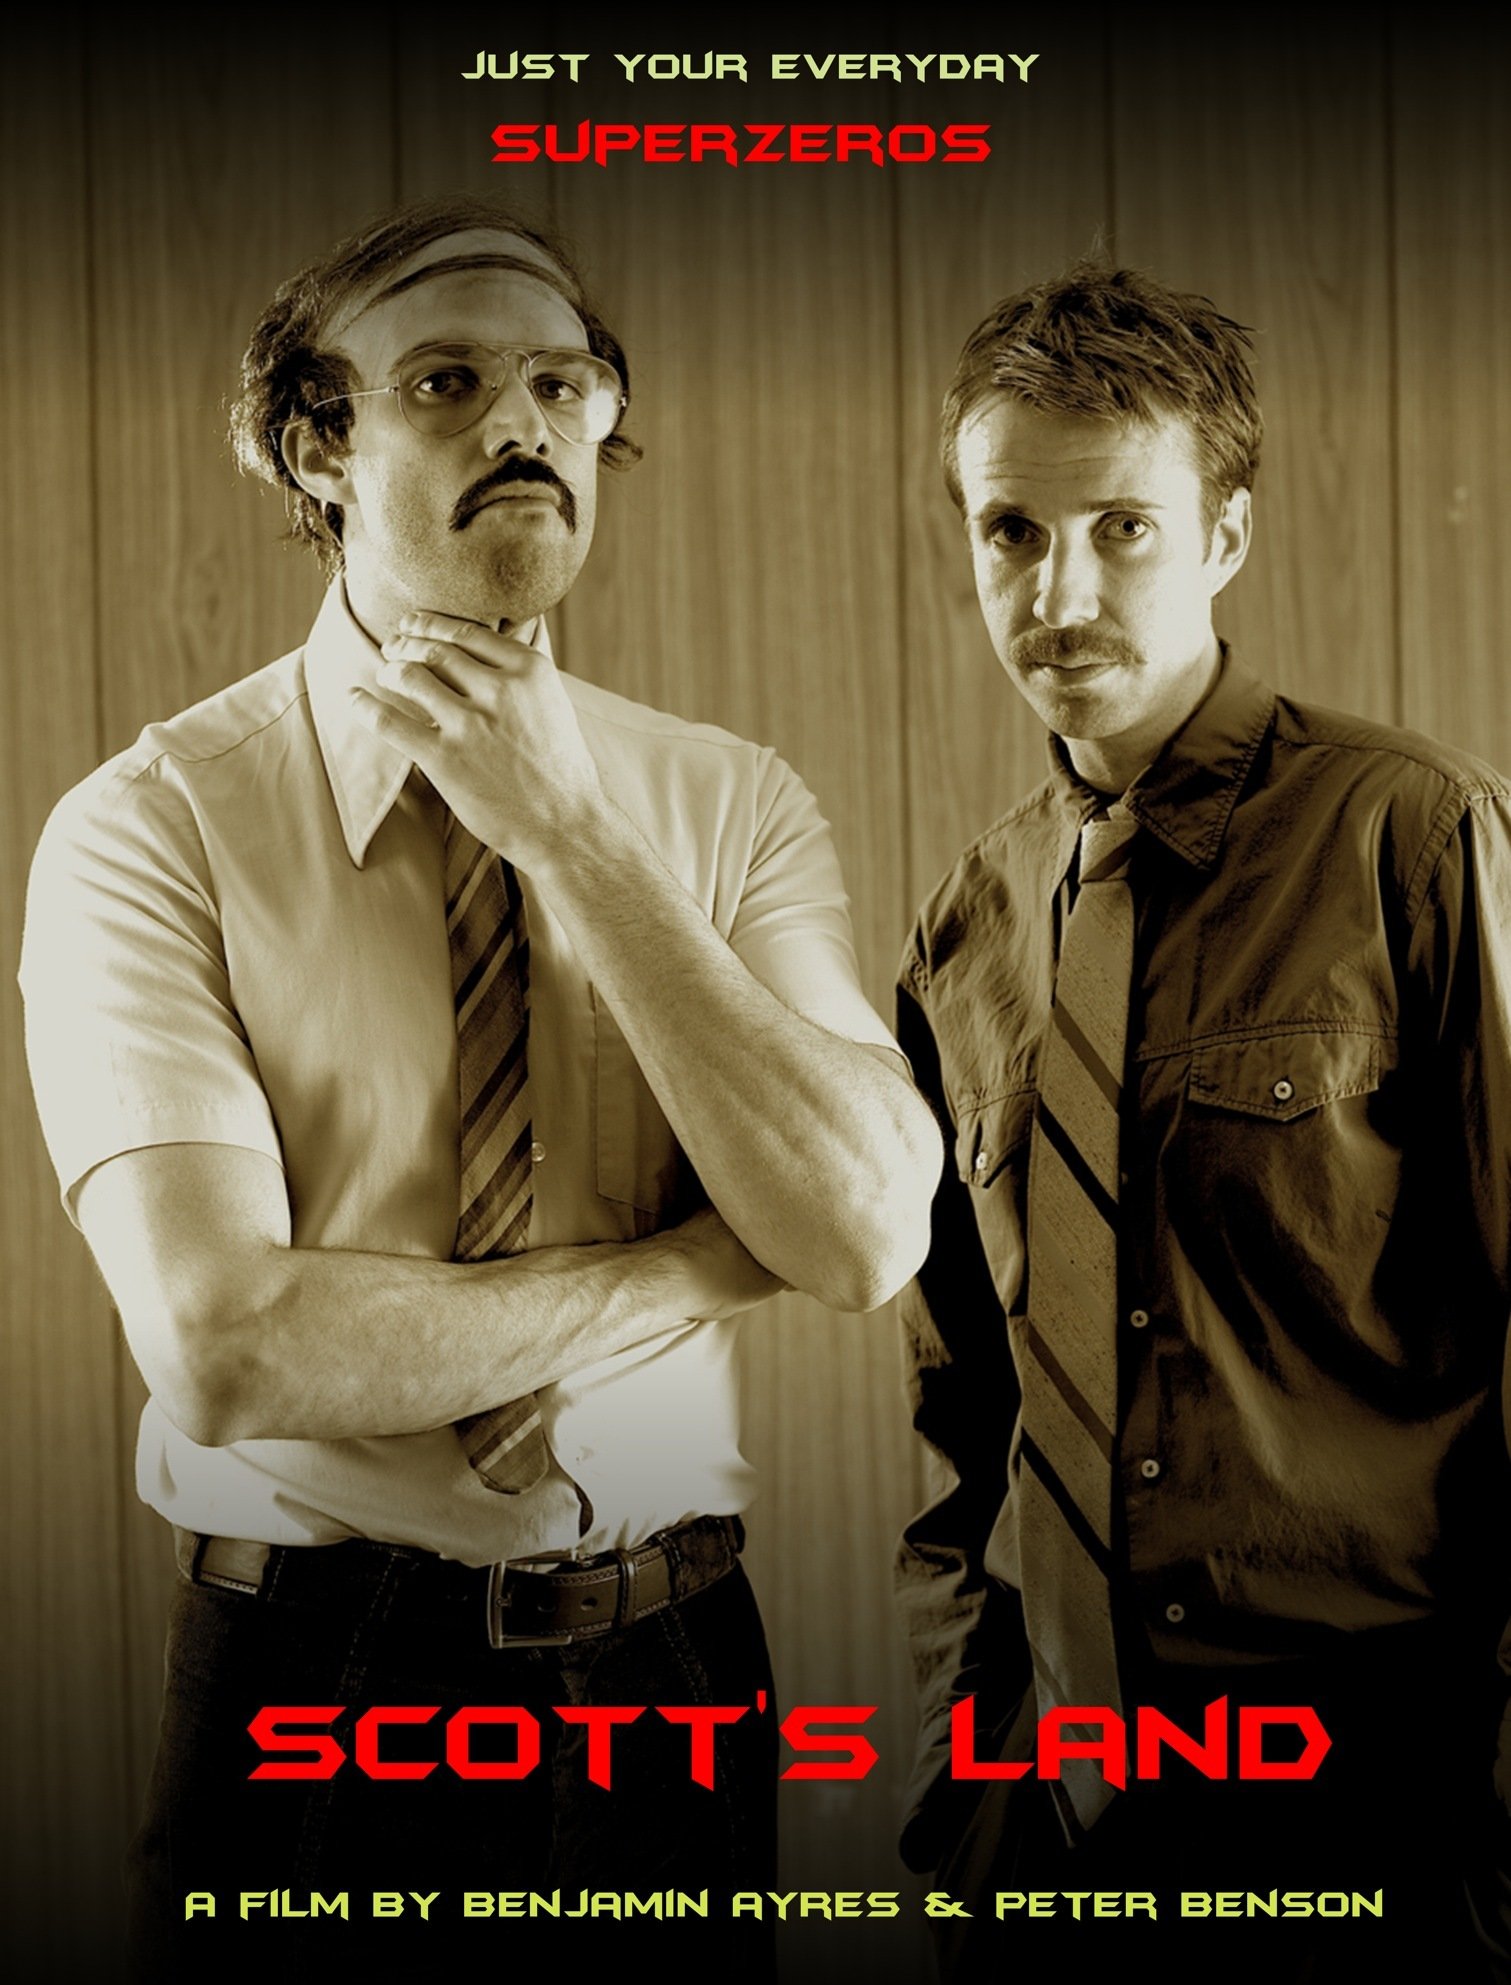 Peter Benson and Benjamin Ayres in Scott's Land (2009)